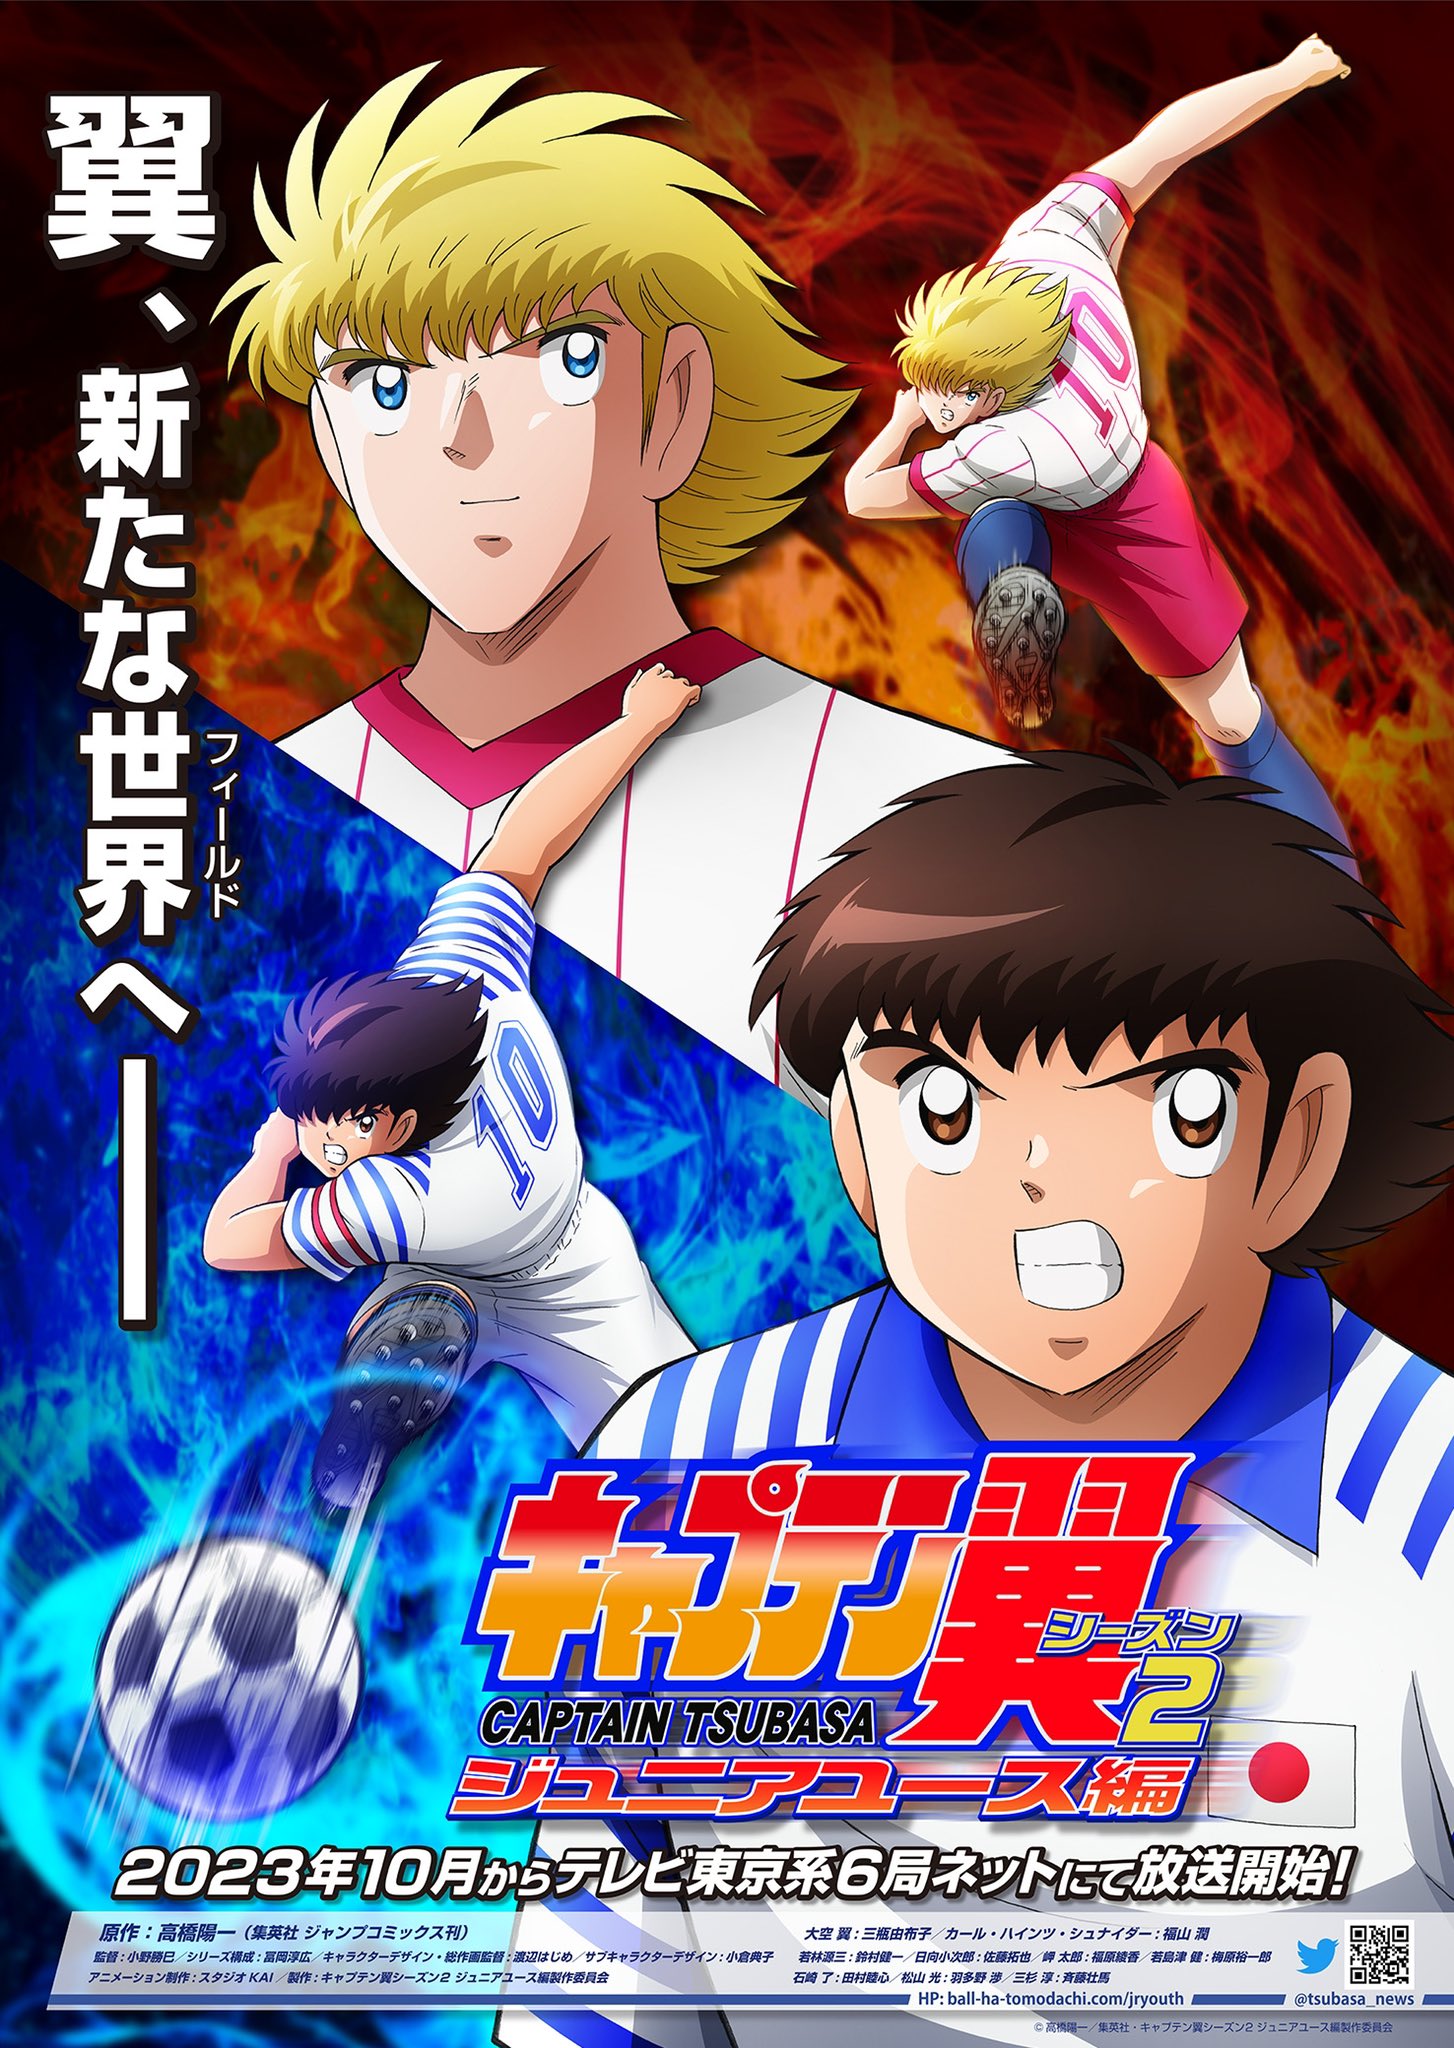 La nouvelle saison de l’anime Captain Tsubasa arrive bientôt